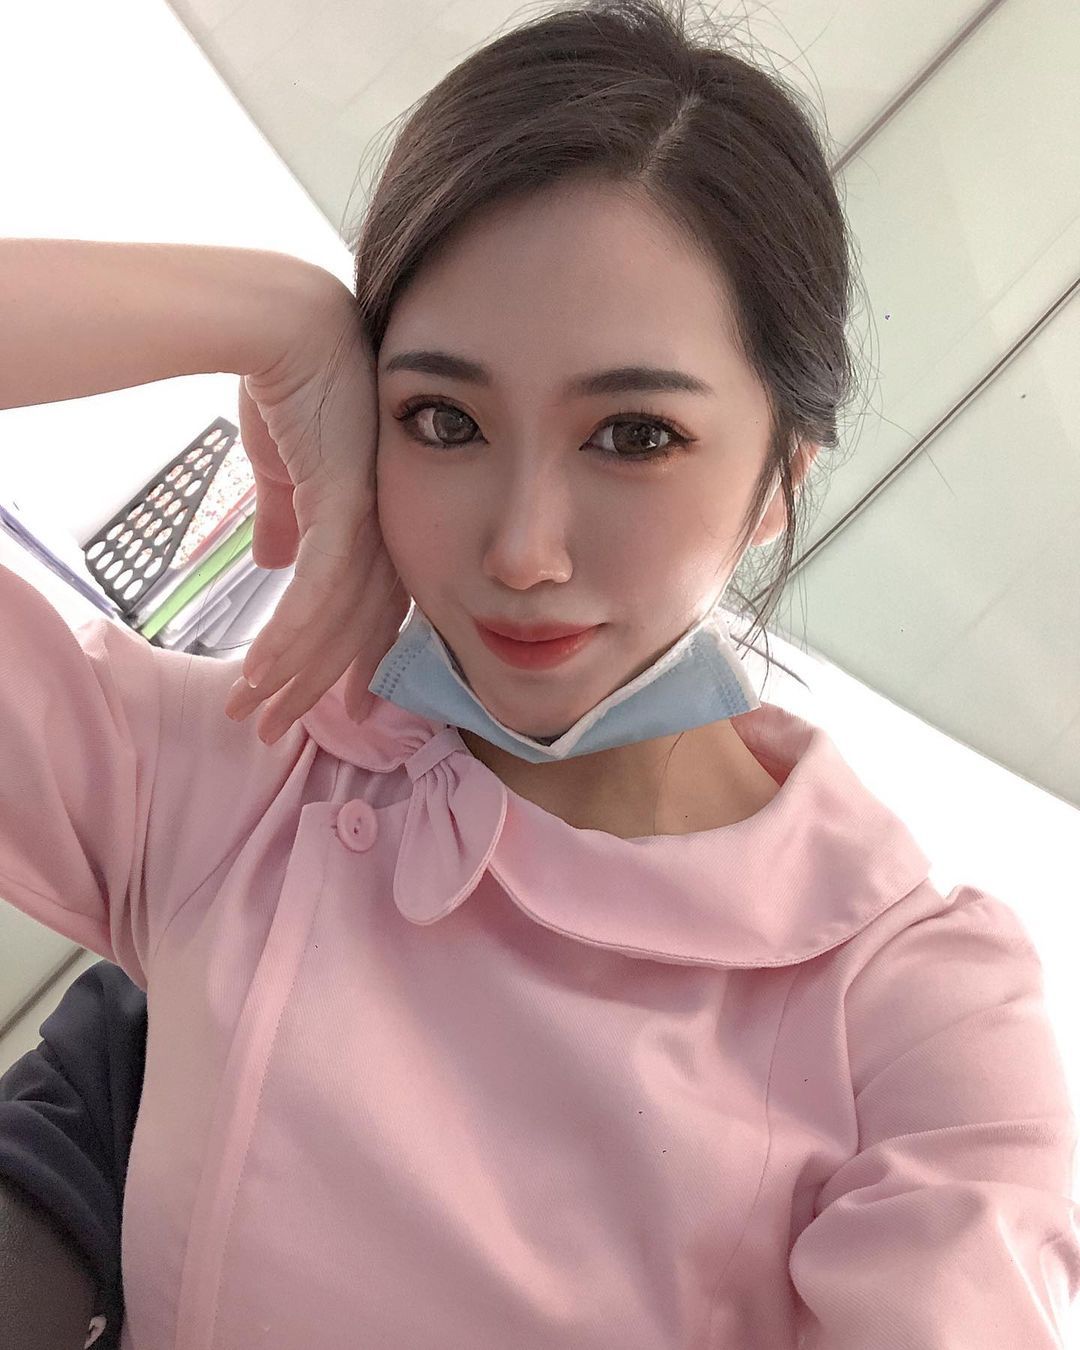 台湾真的好多漂亮护理师，有甜美可爱也有火辣逼人的～今天要介绍的这位正妹护理师「Yuna」就是甜美火辣的mix版，脸蛋精致漂亮的她笑起来很甜，穿上护理师的粉红制服既专业又和蔼可亲，感觉被她照顾的病人很幸福～！